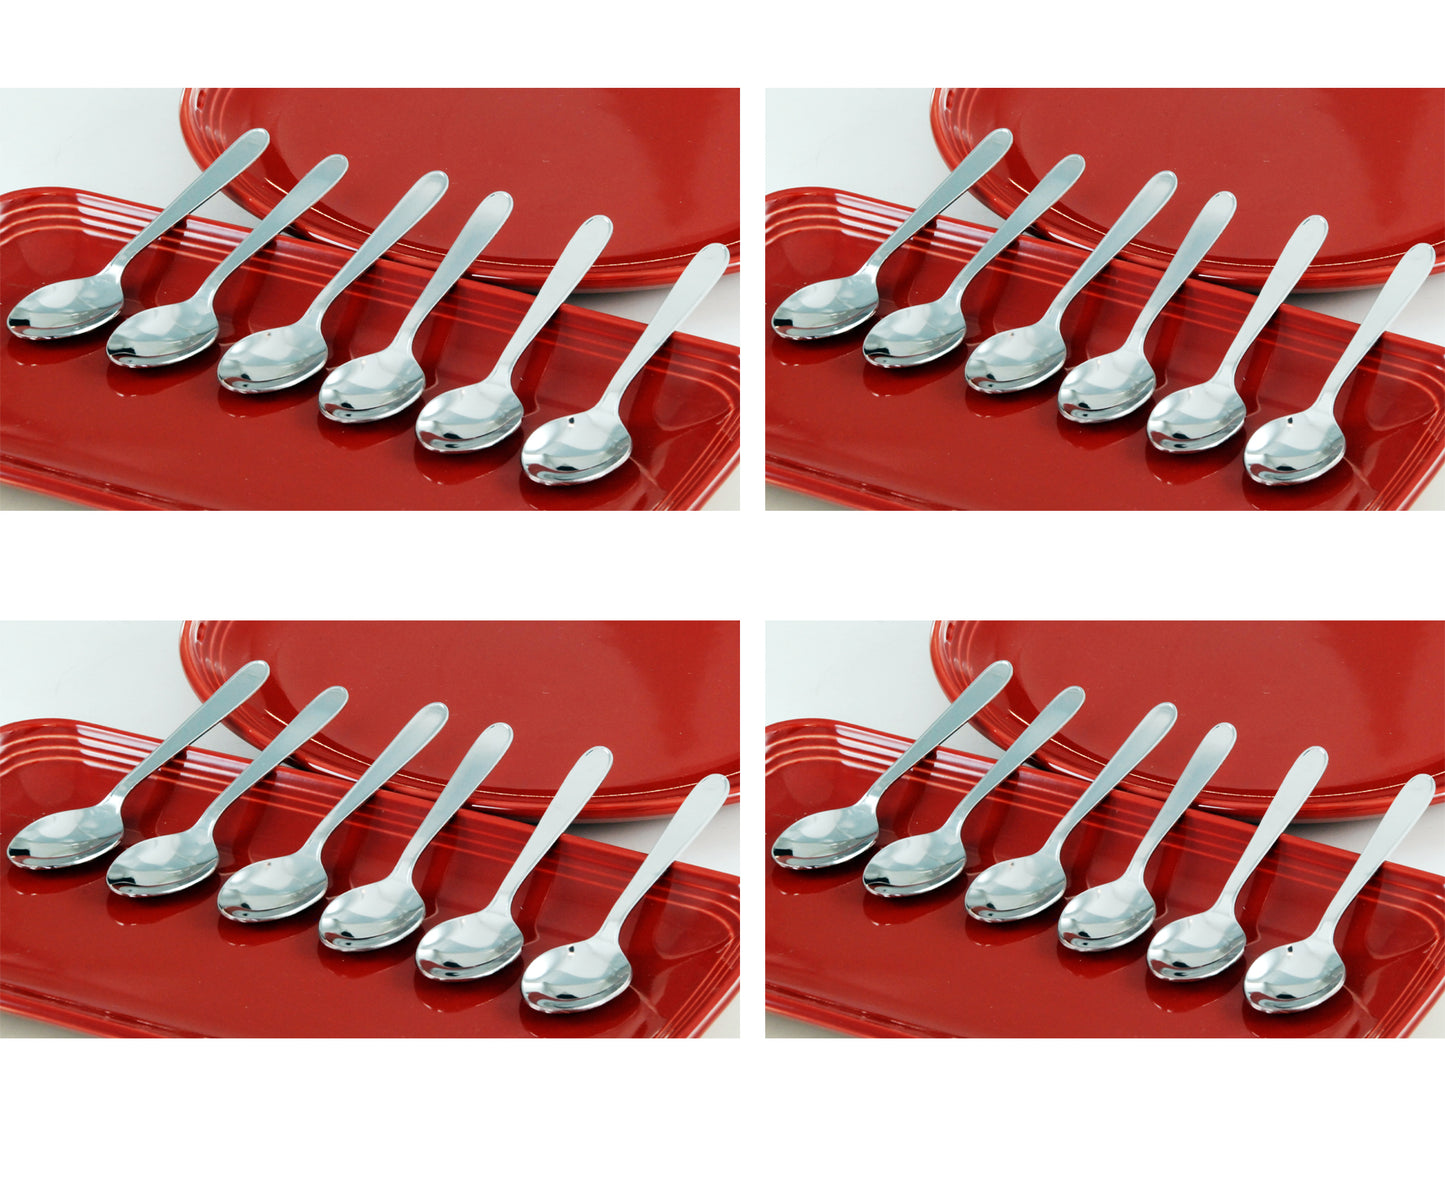 Buckingham Stainless Steel Tea Spoons Teaspoons : Pack of 24